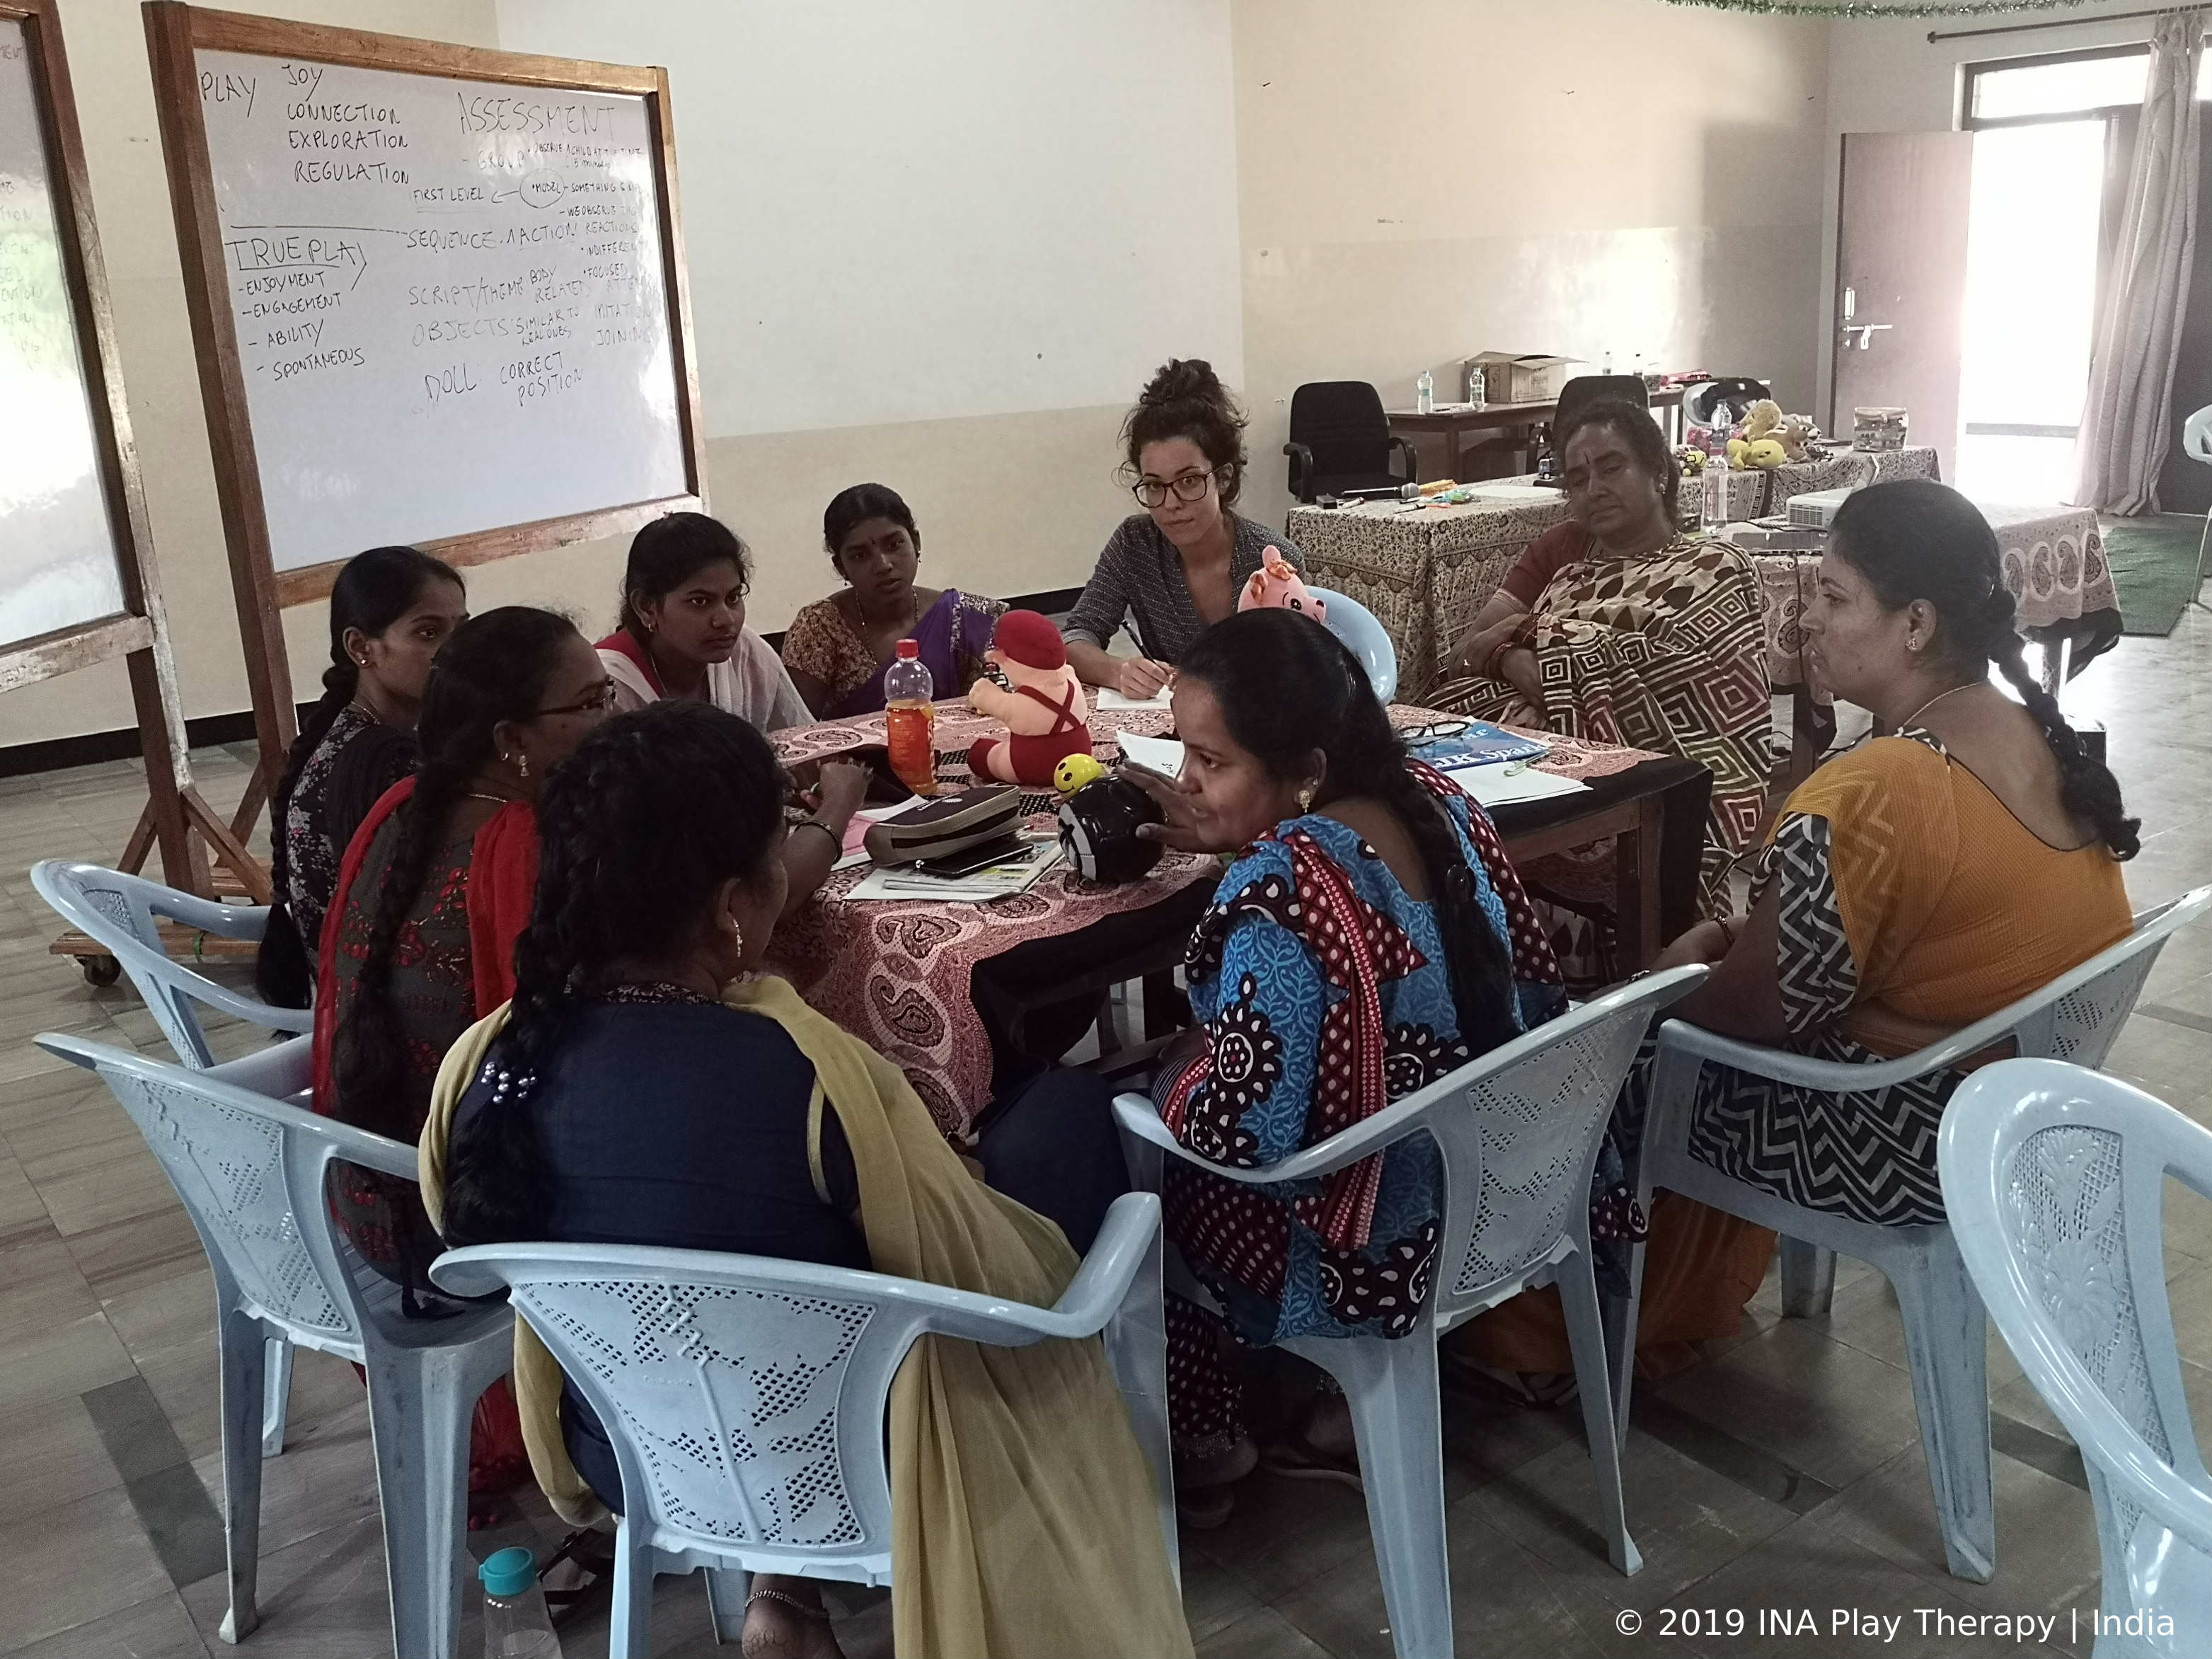 isabella cassina presenta un corso di play therapy in india